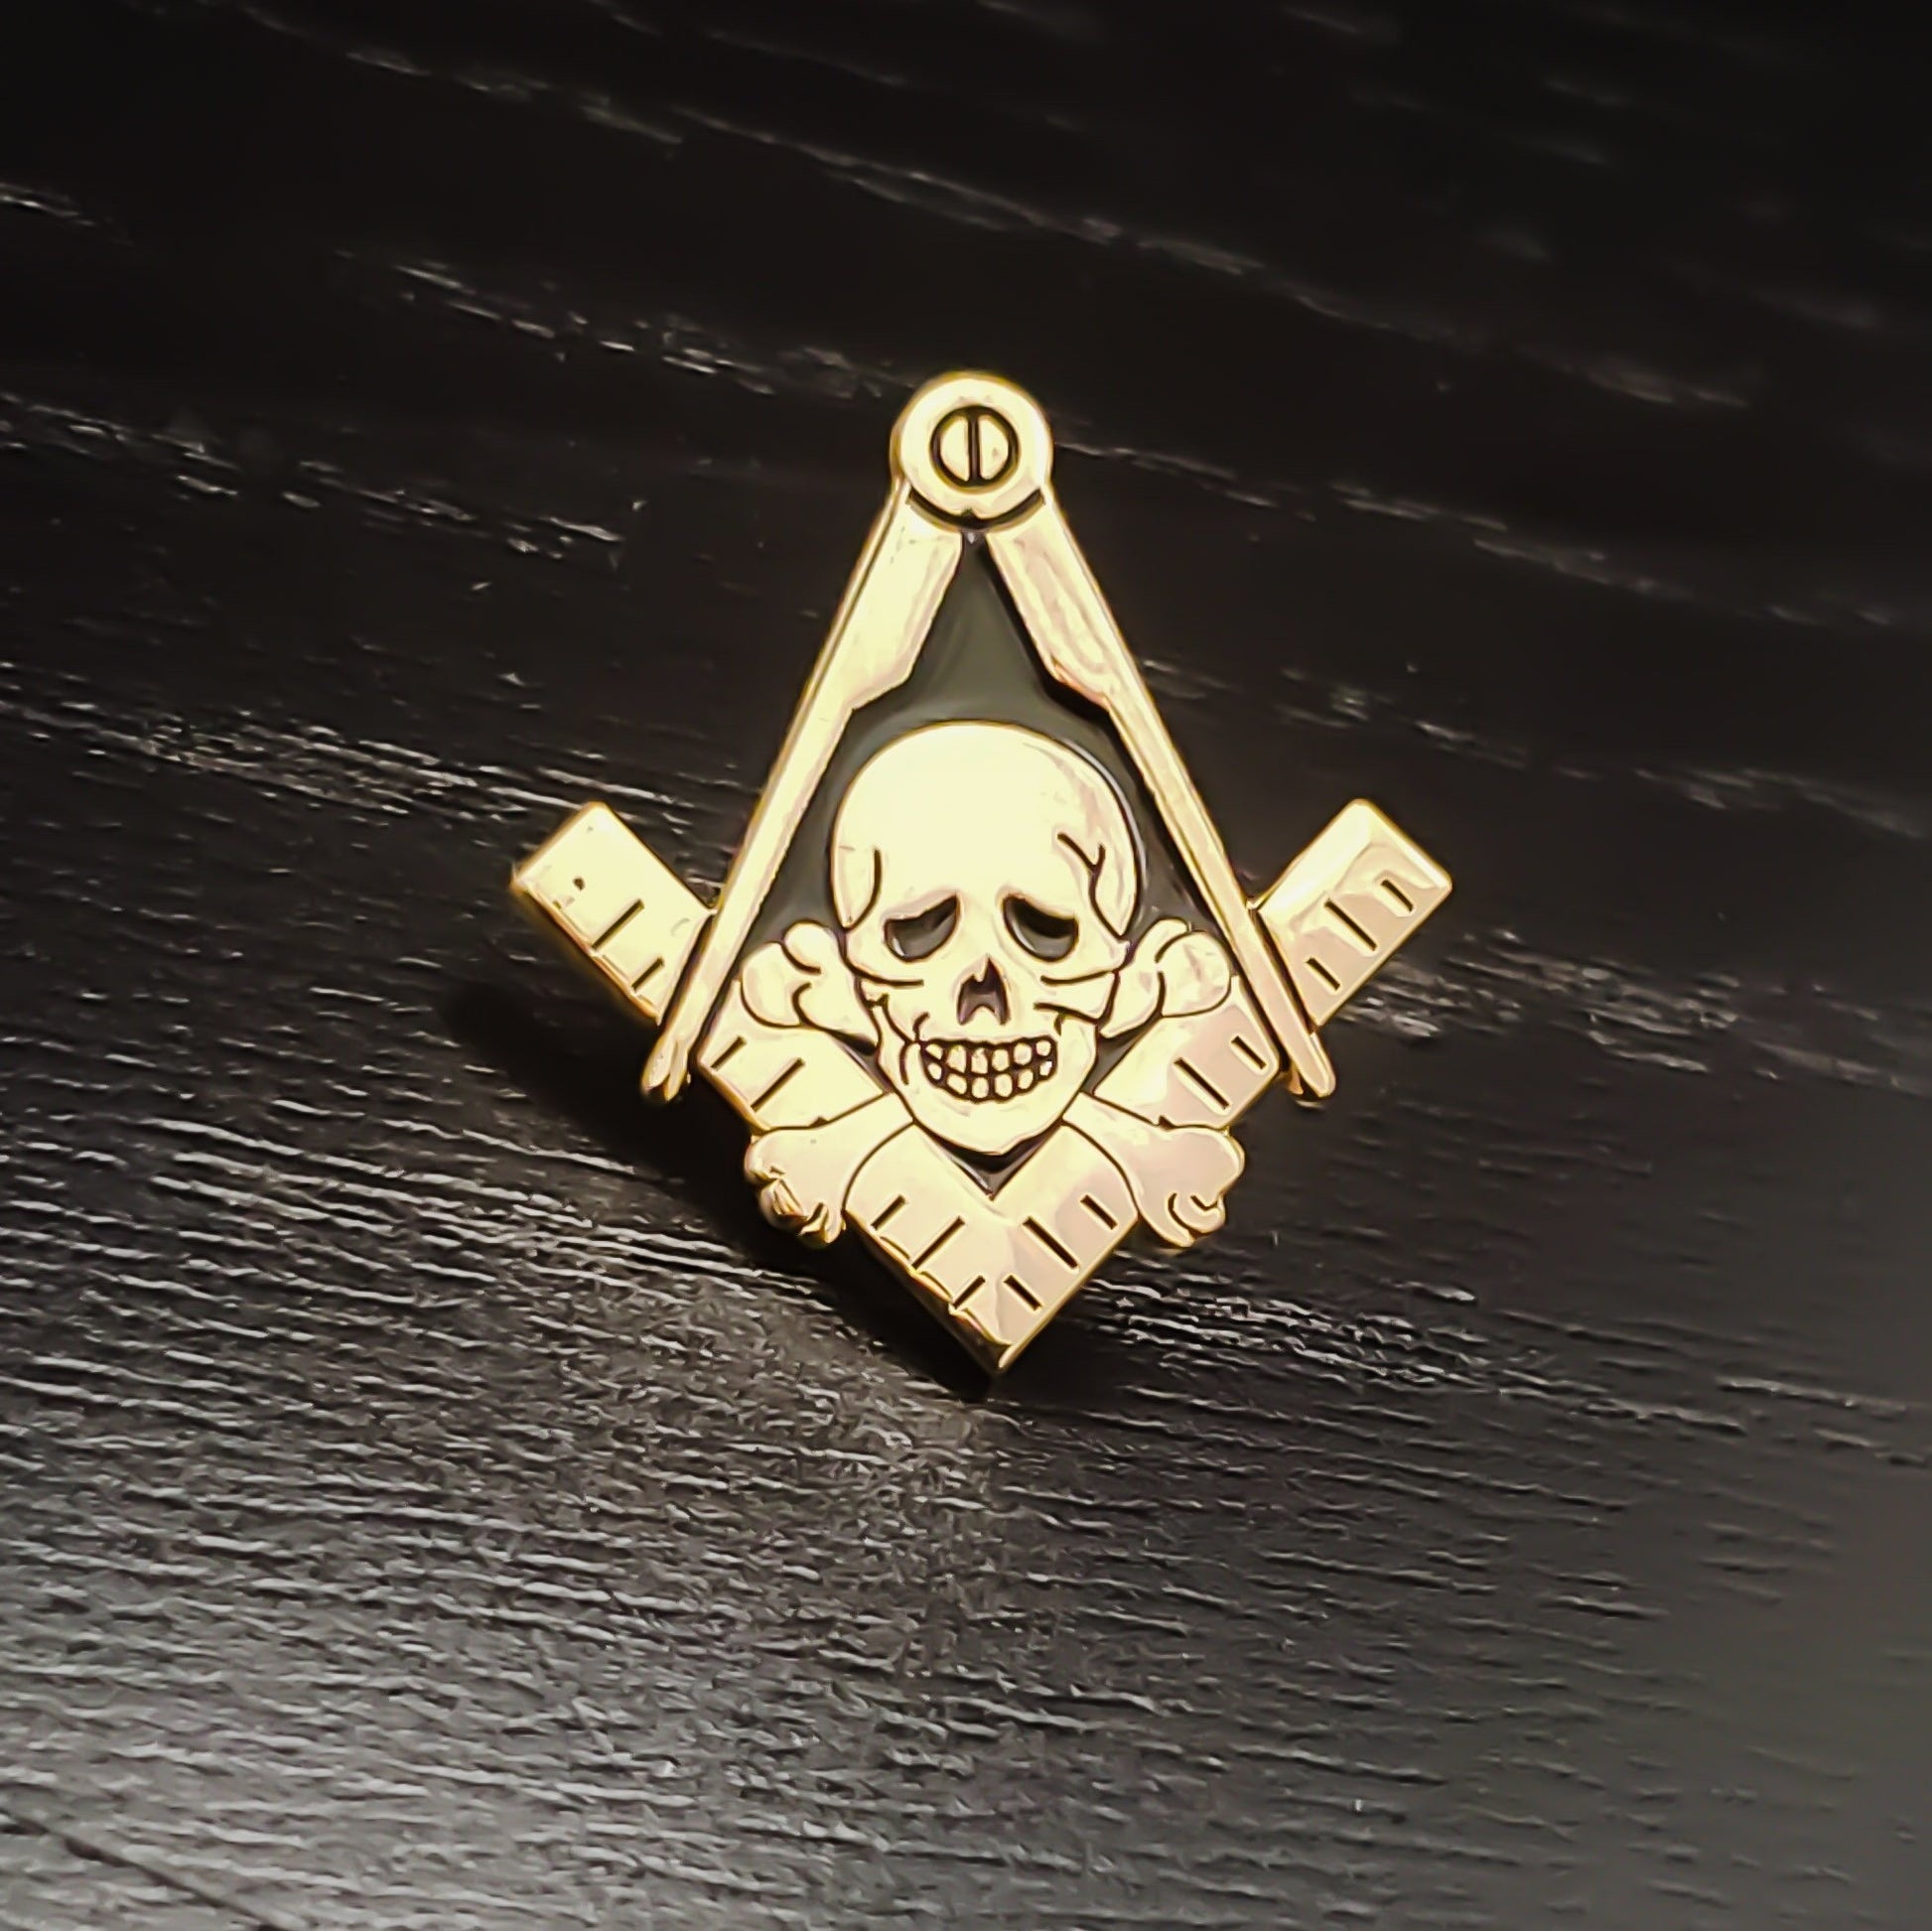 Memento Mori Masonic Skull Lapel Pin Gold/Black Masonic Pin